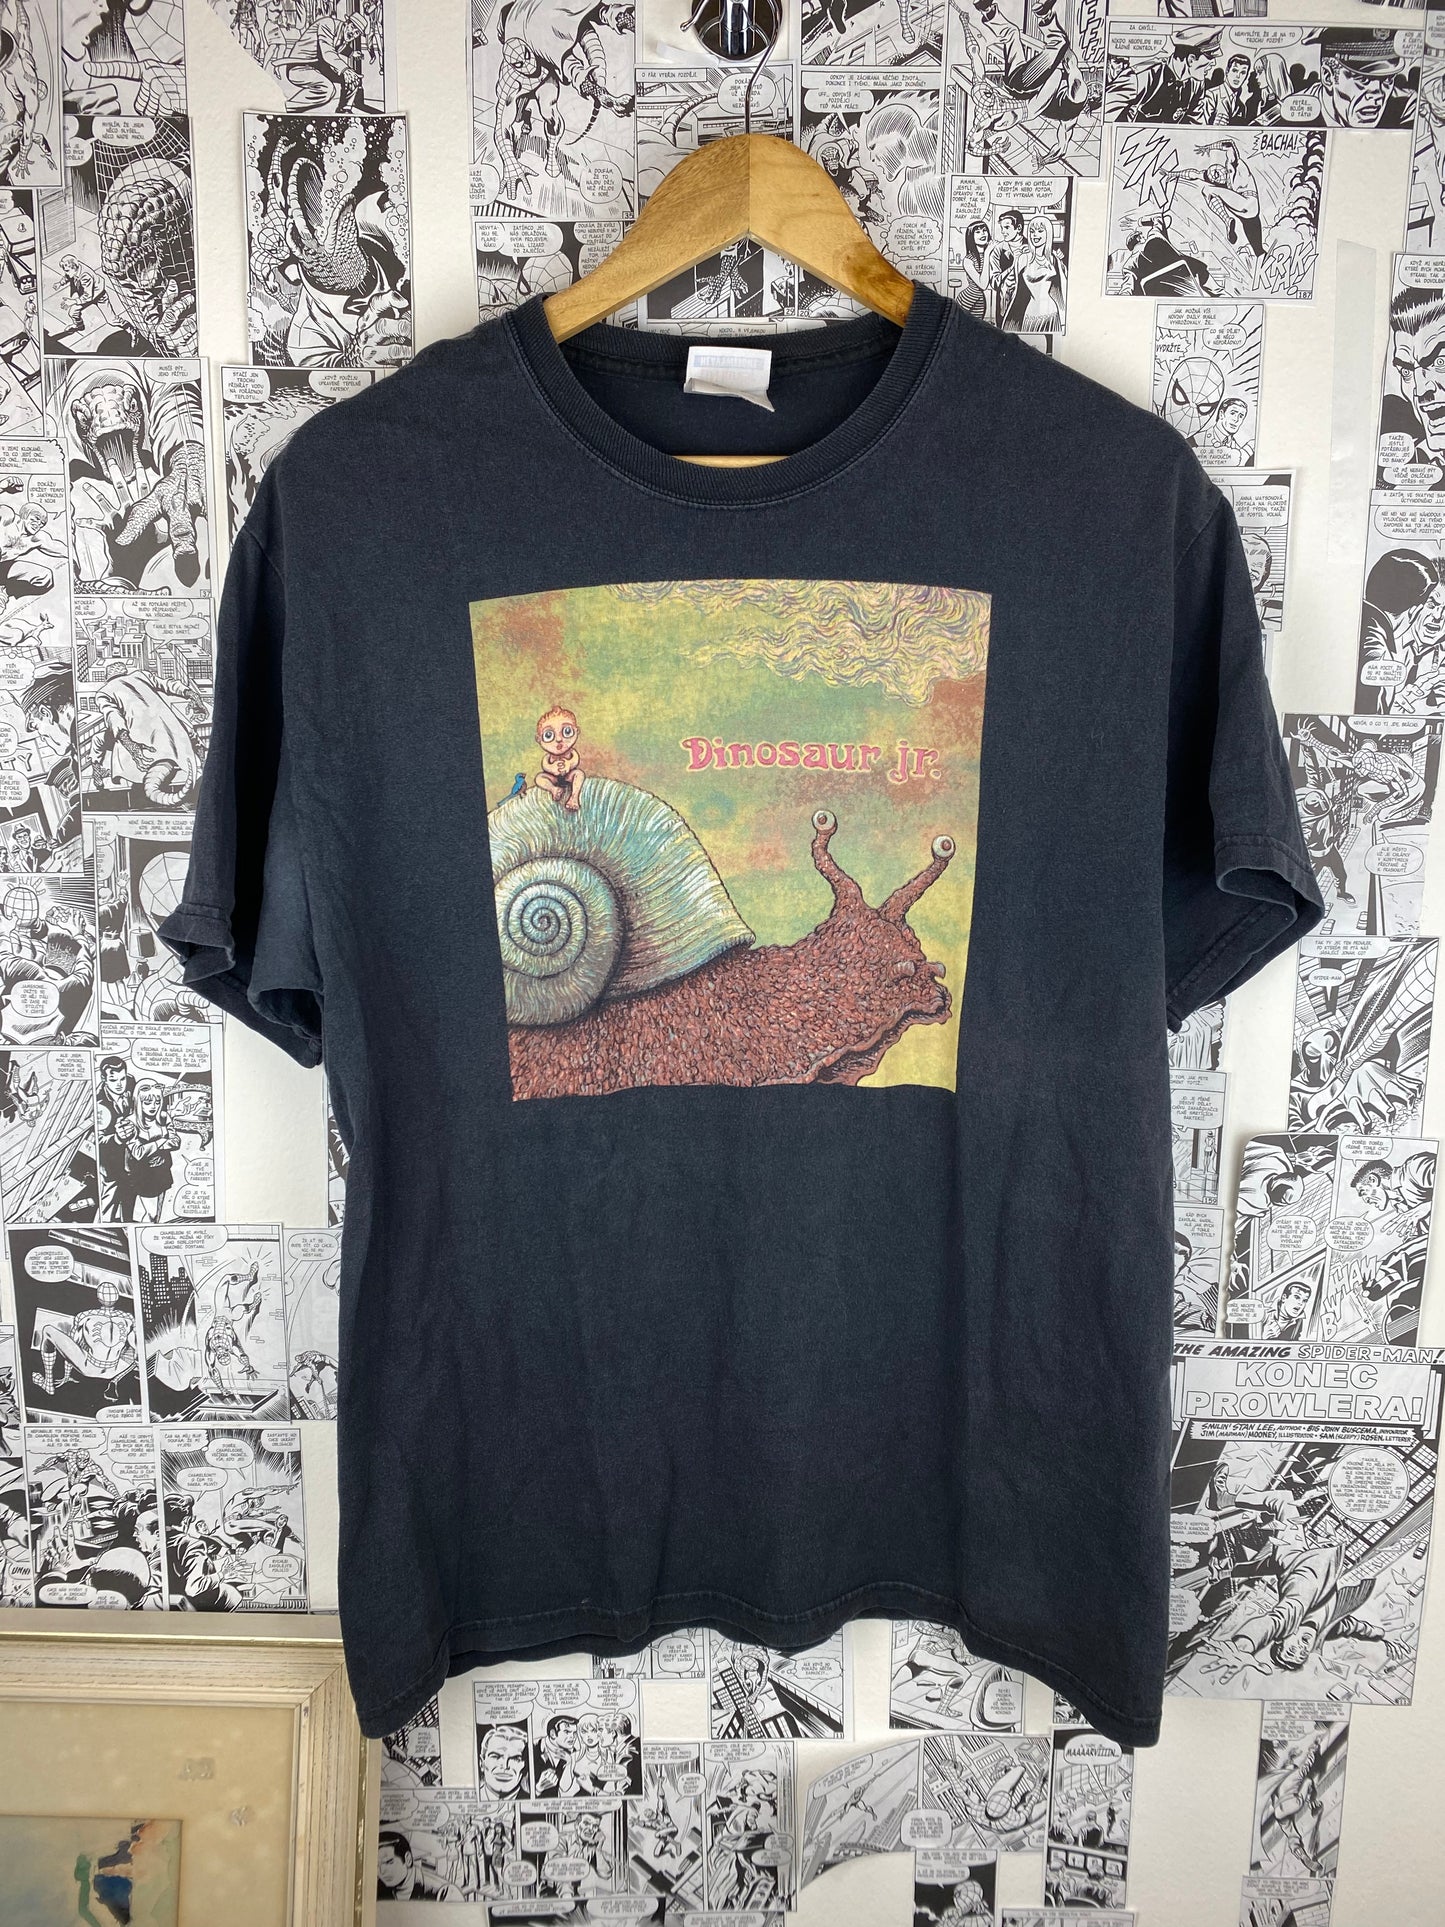 Vintage Dinosaur Jr. 2009 tour t-shirt - size M